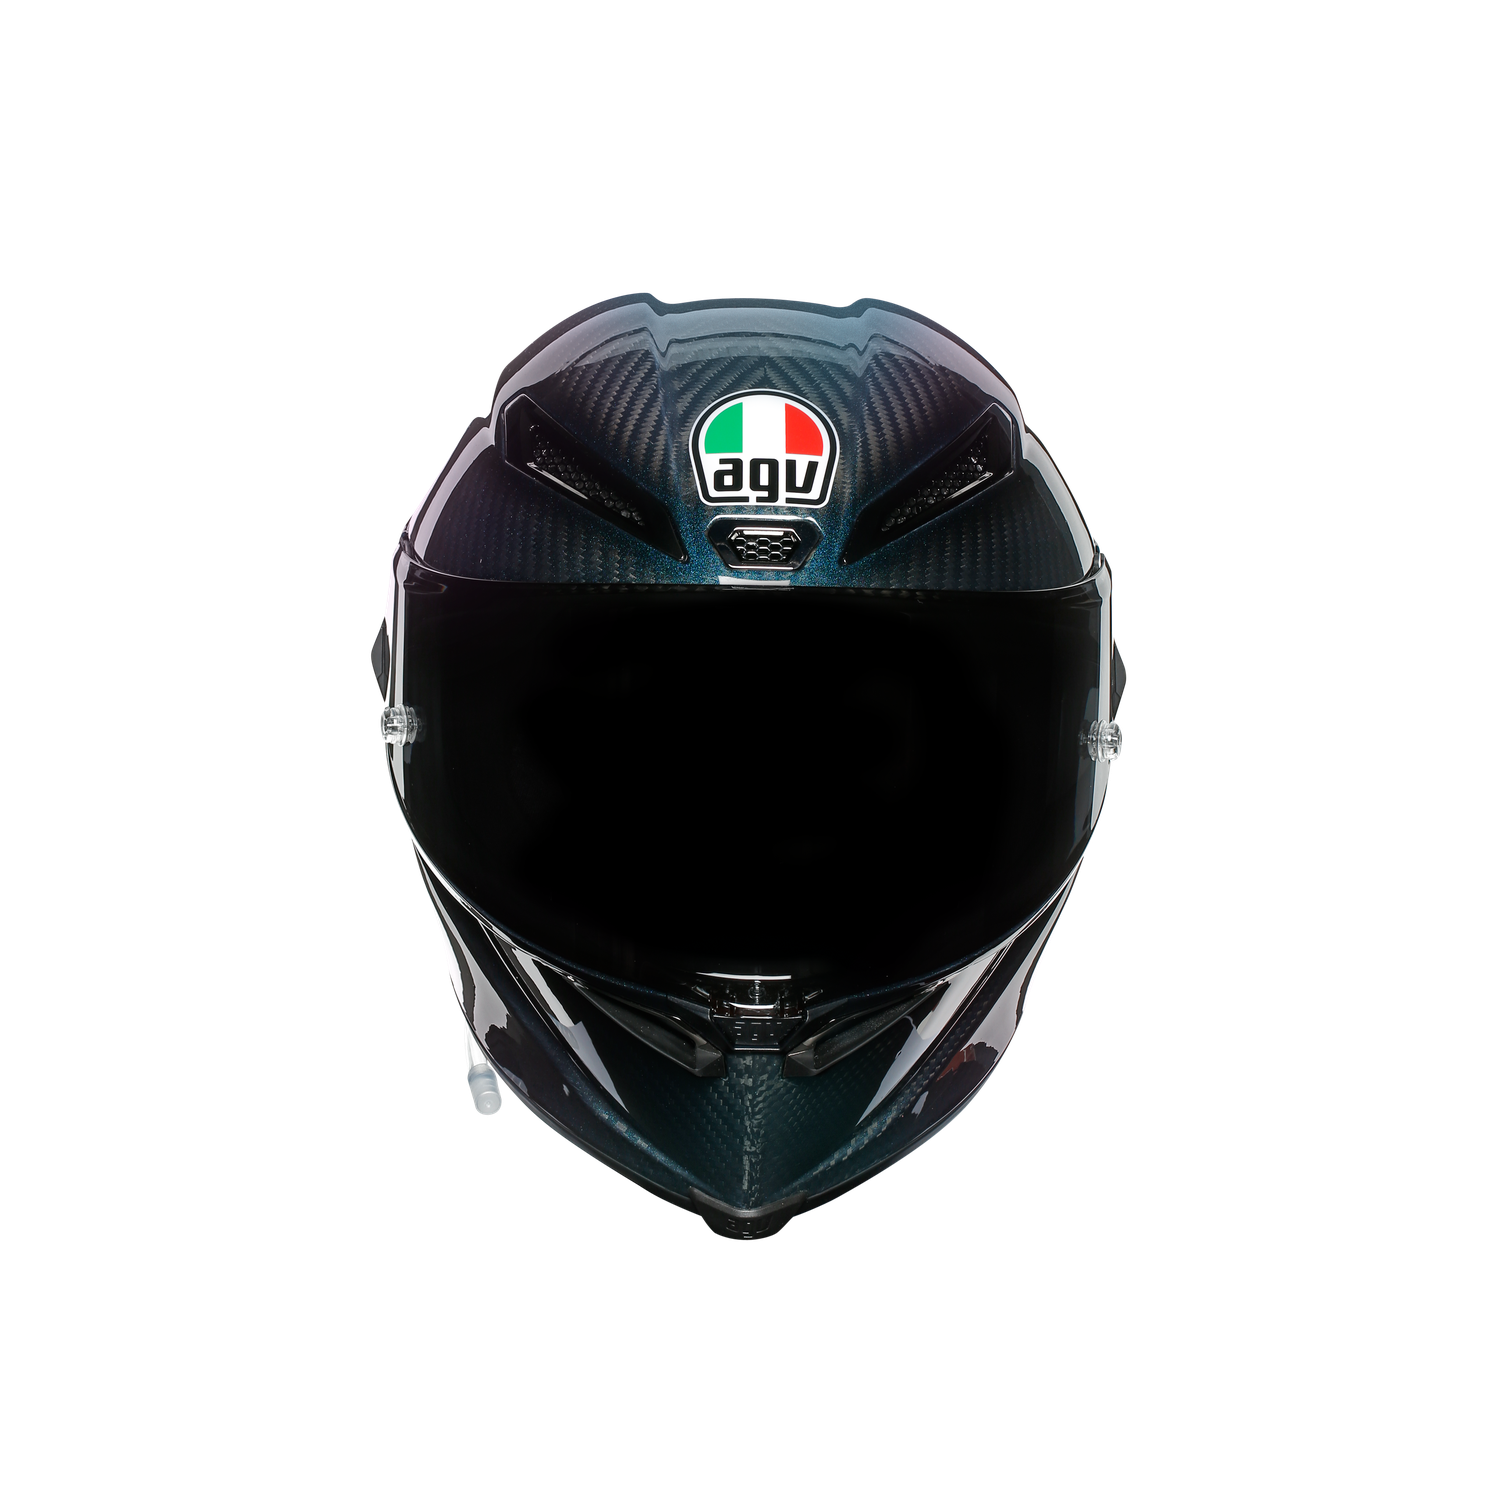 AGV PISTA GP RR Mサイズ ヘルメット/シールド オートバイアクセサリー 